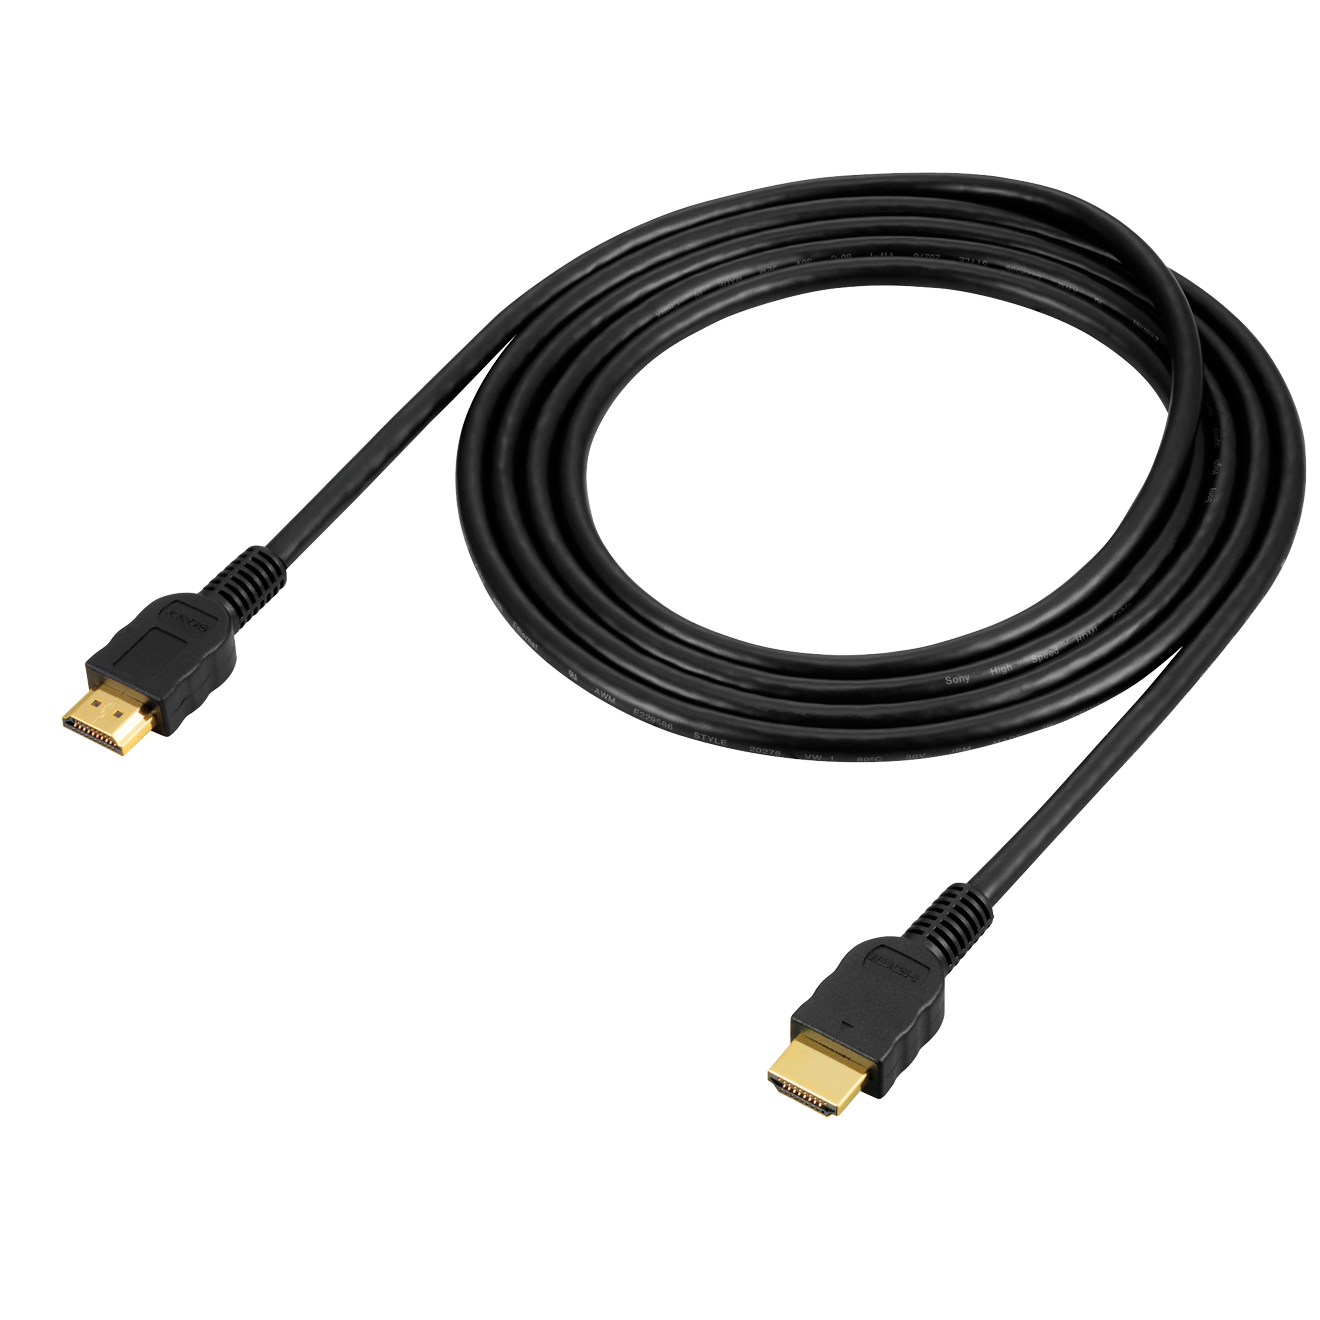 DLCHE30BSK: 3-metrowy przewód HDMI High Speed z kanałem Ethernet